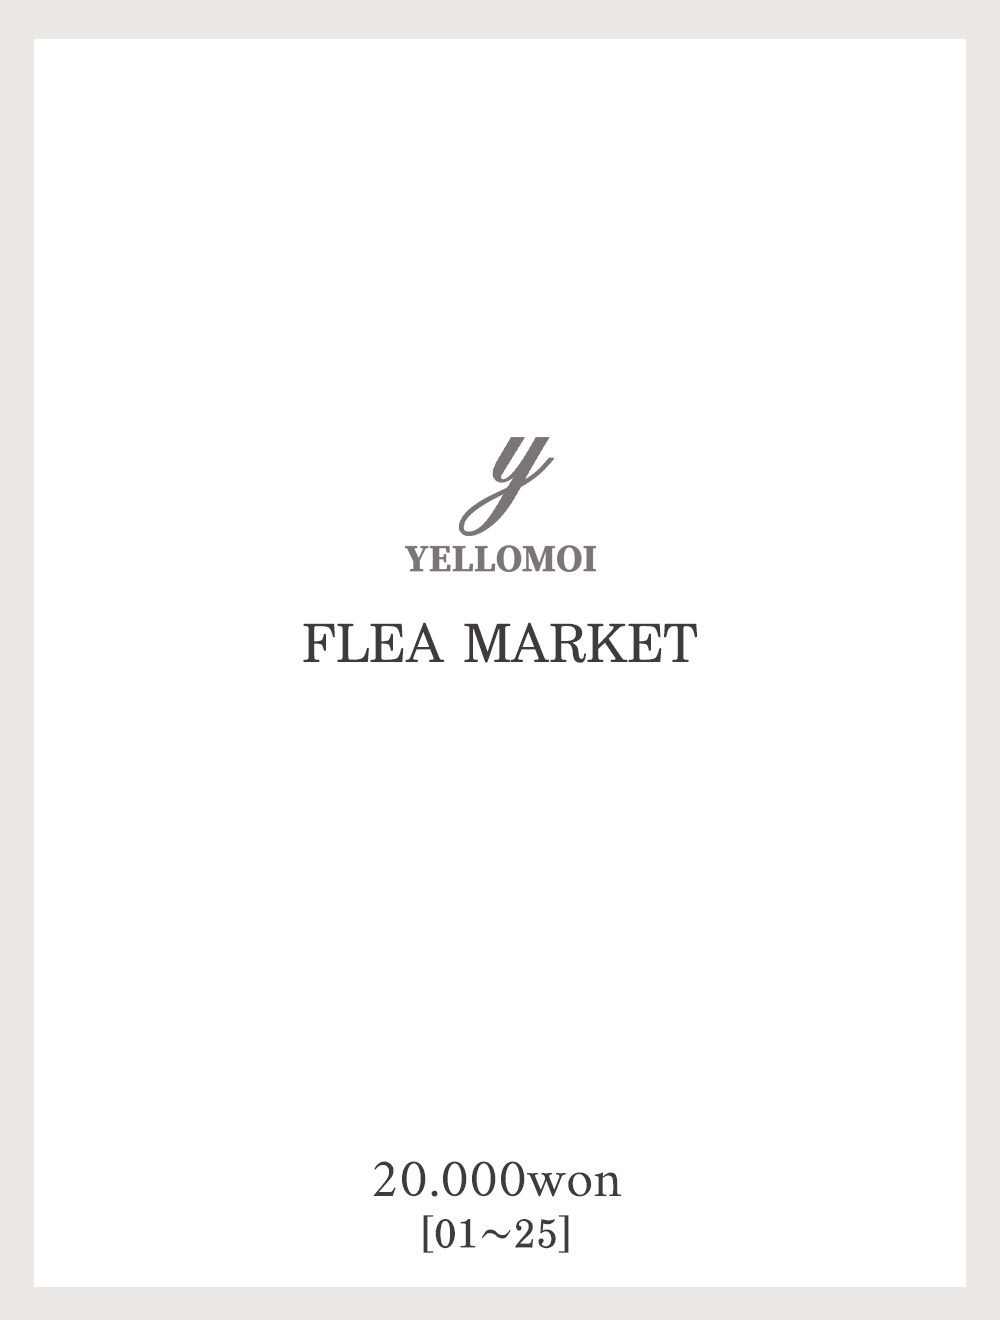 [YELLOMOI]Flea market, 2만원(01-25)